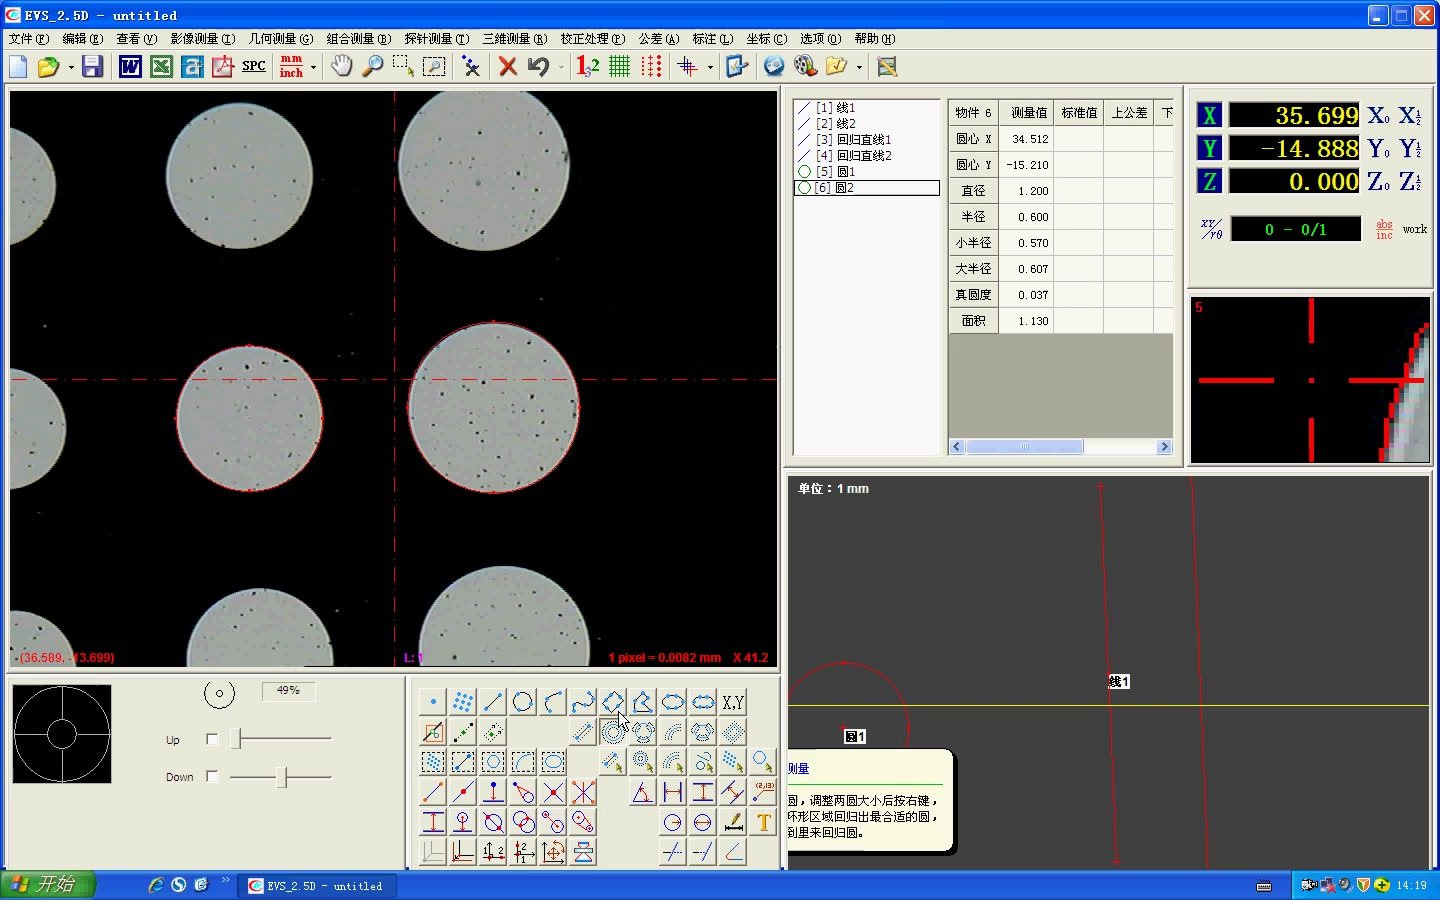 影像仪二次元介绍教学视频EVS-2.5D